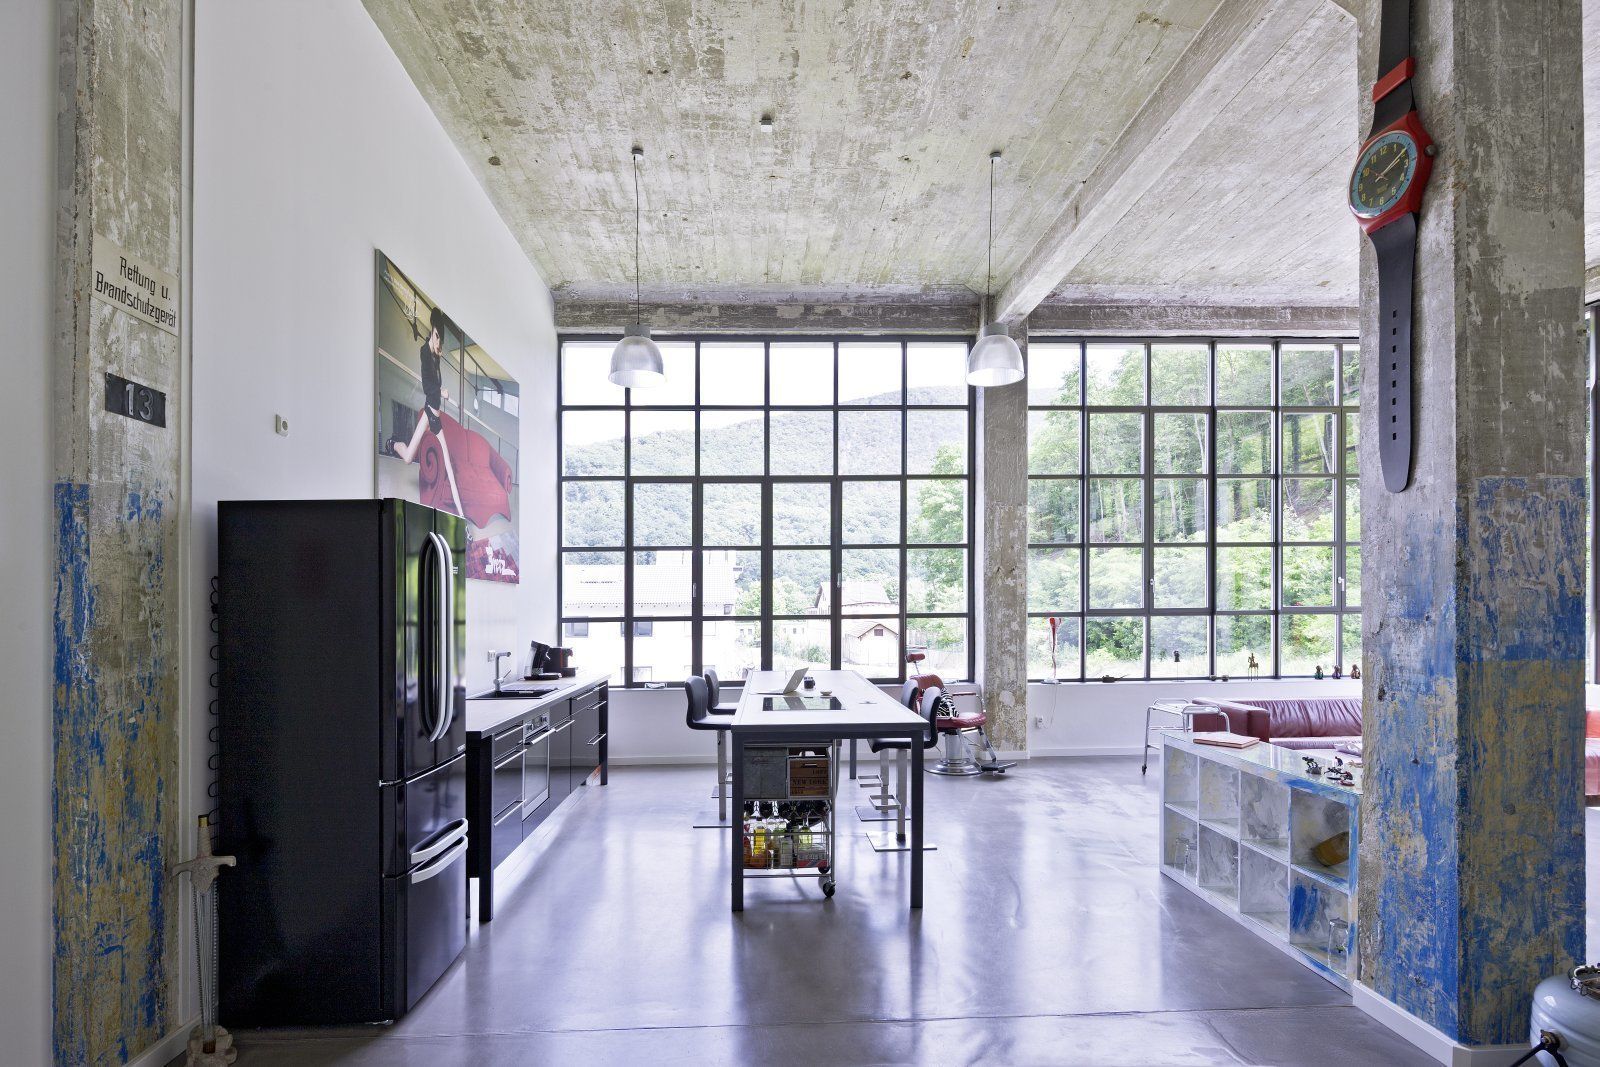 Lofts - Tuchfabrik, Hauser - Architektur Hauser - Architektur Industrial style kitchen